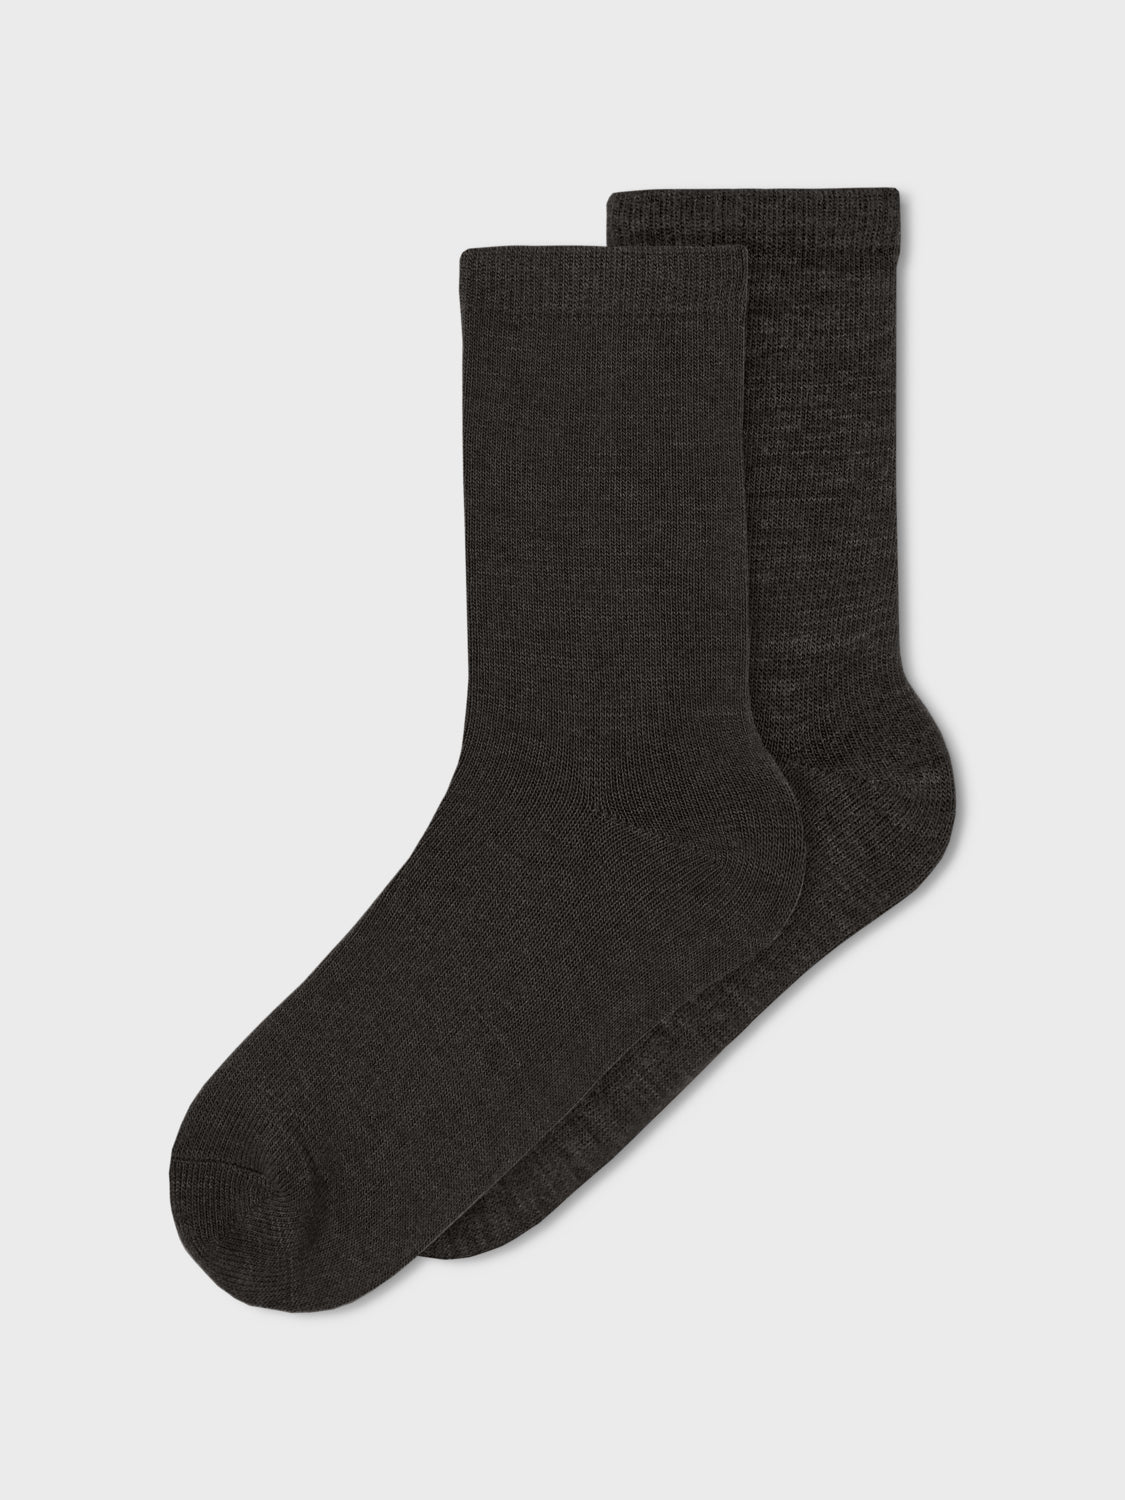 NKMWAK Socks - Black